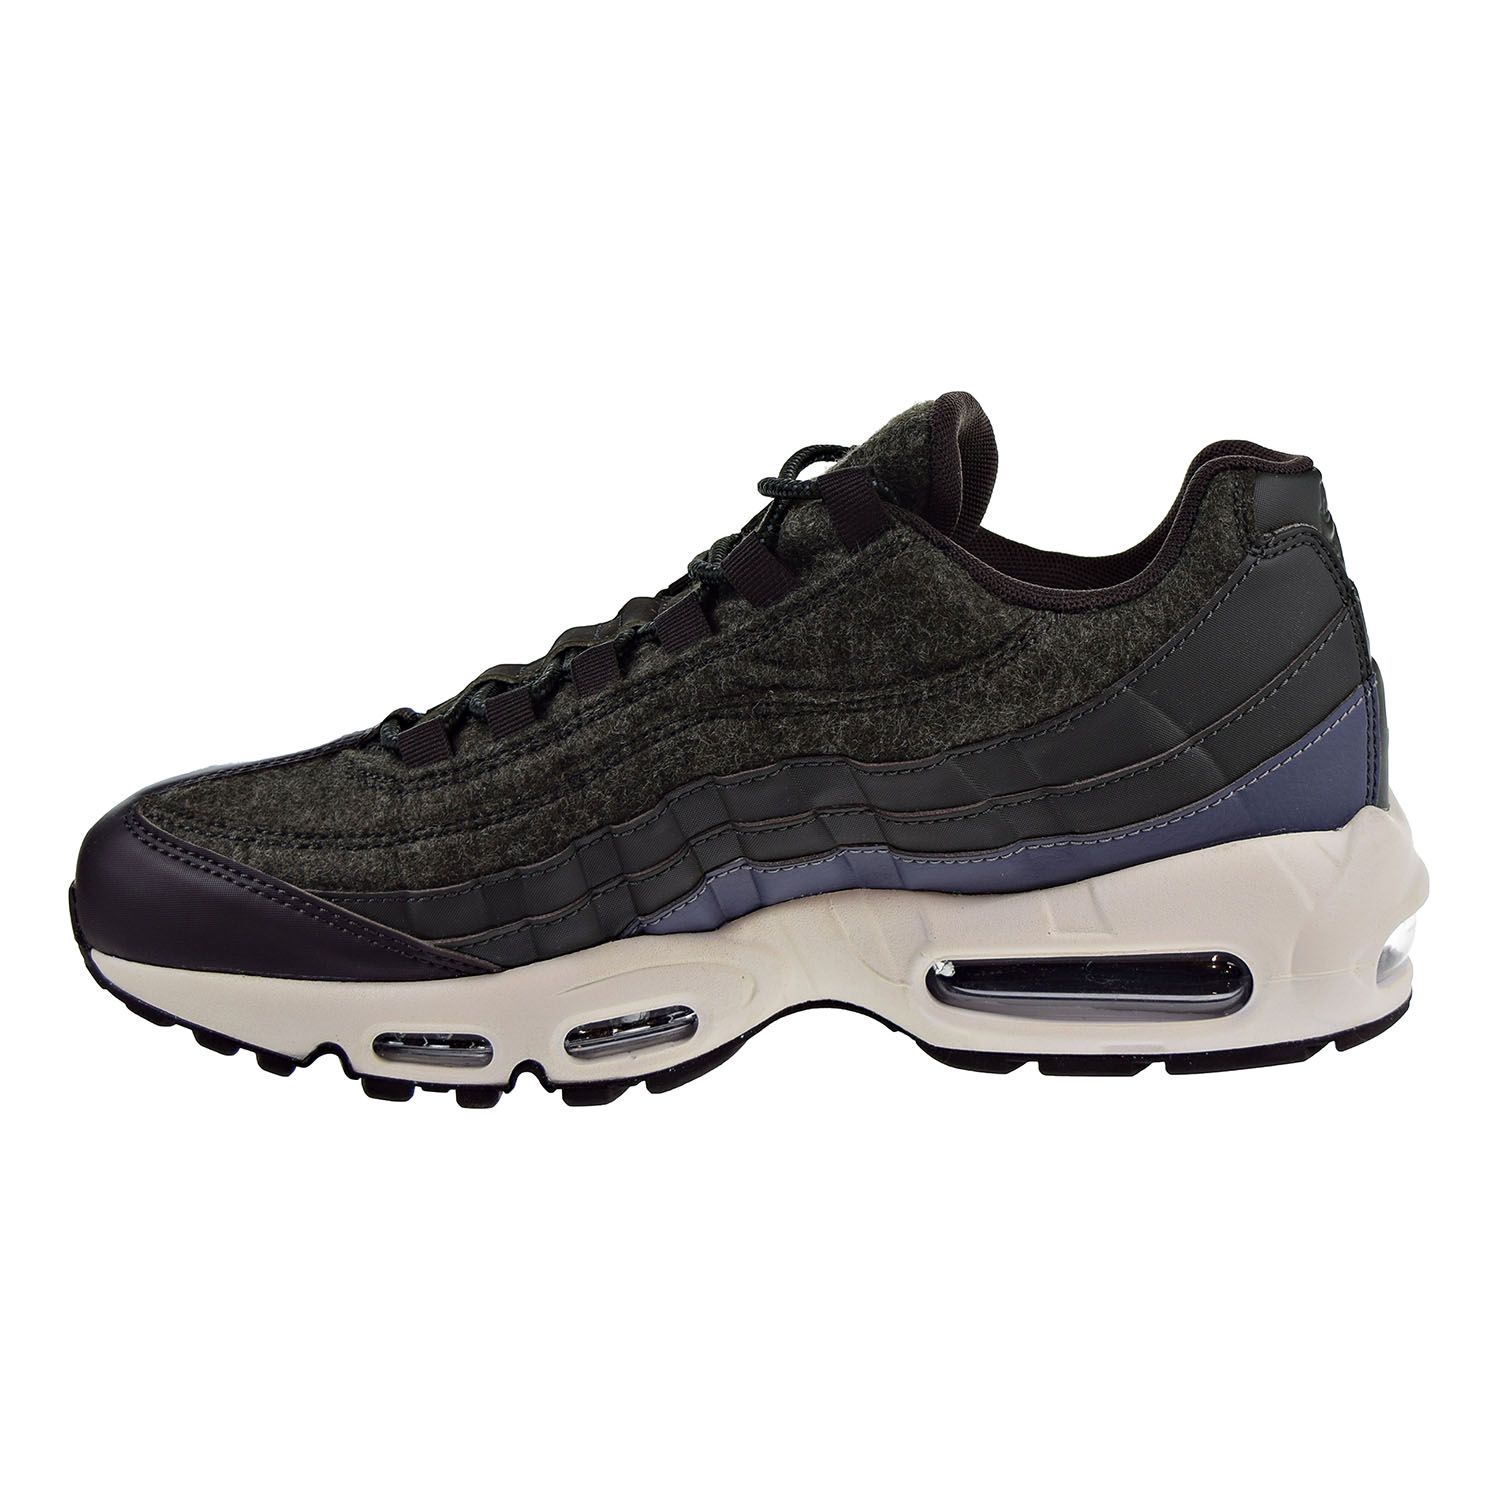 Nike Air Max 95 Premium Men's Running Shoes Sequoia / Light Carbon 538416-300 (8 D(M) US)